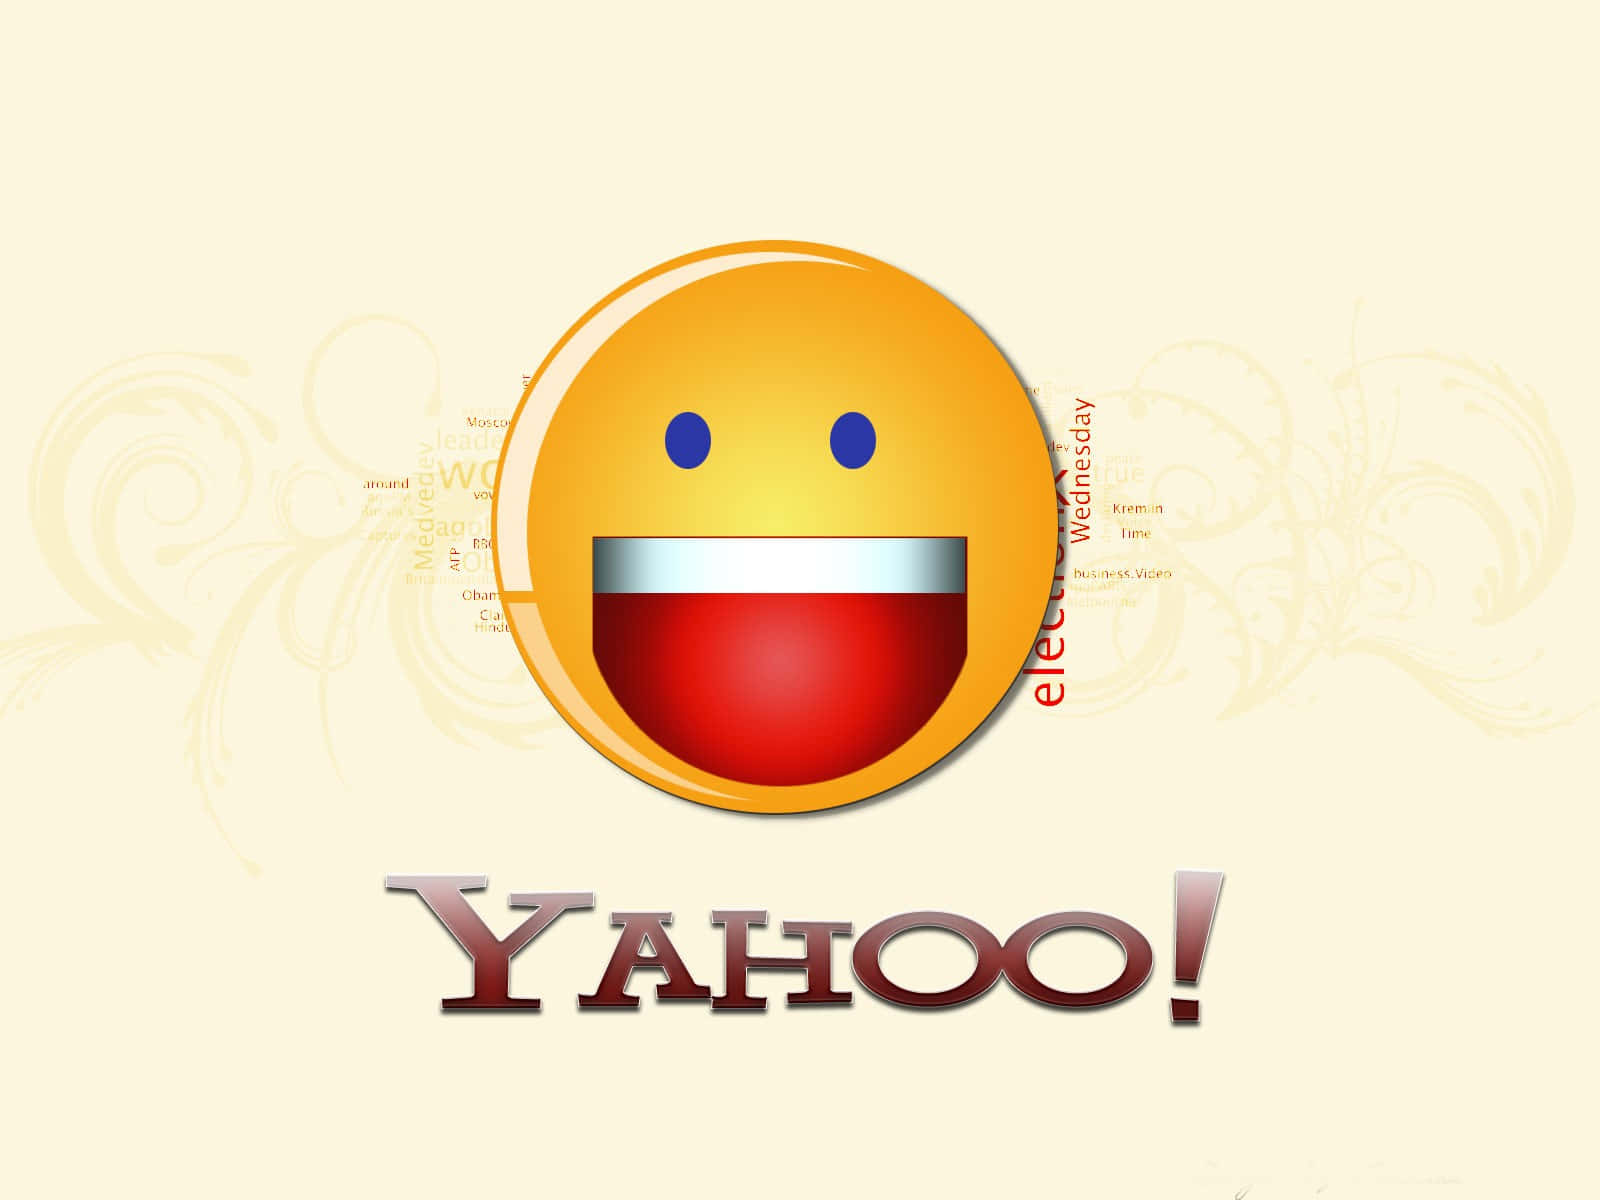 Machensie Sich Auf Ihre Reise Mit Yahoo! Bereit!